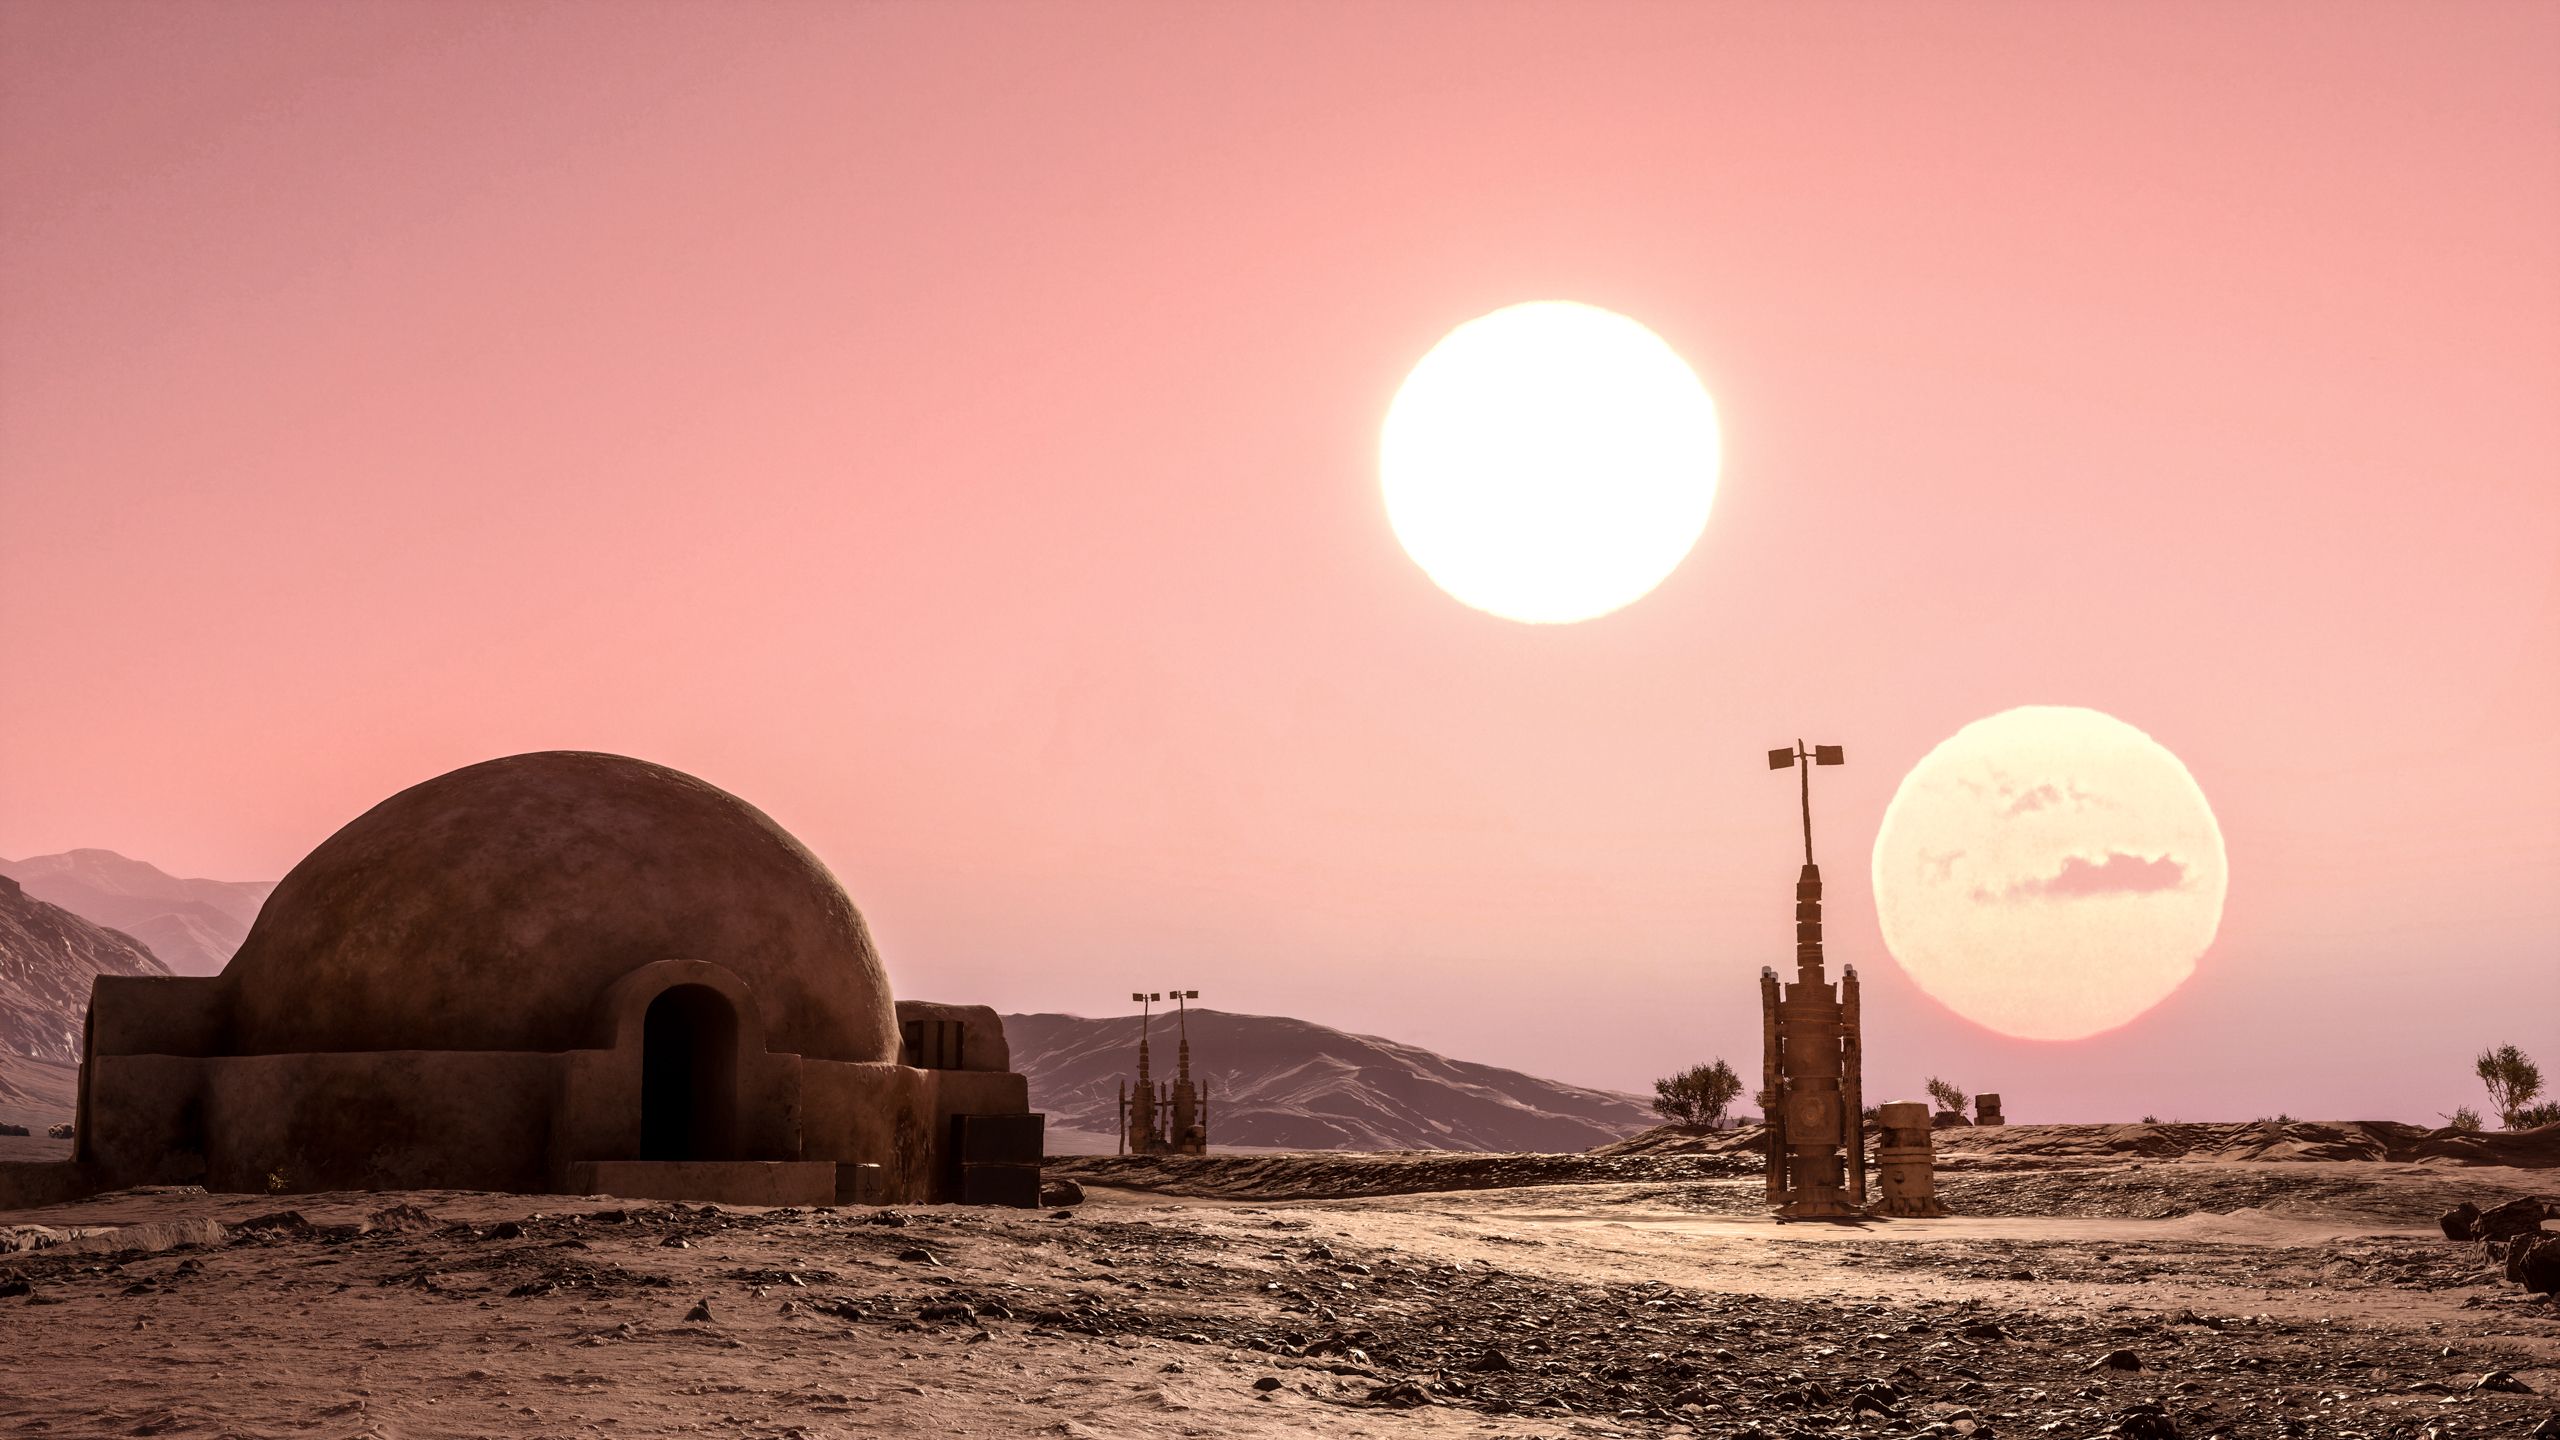 Tatooine Background